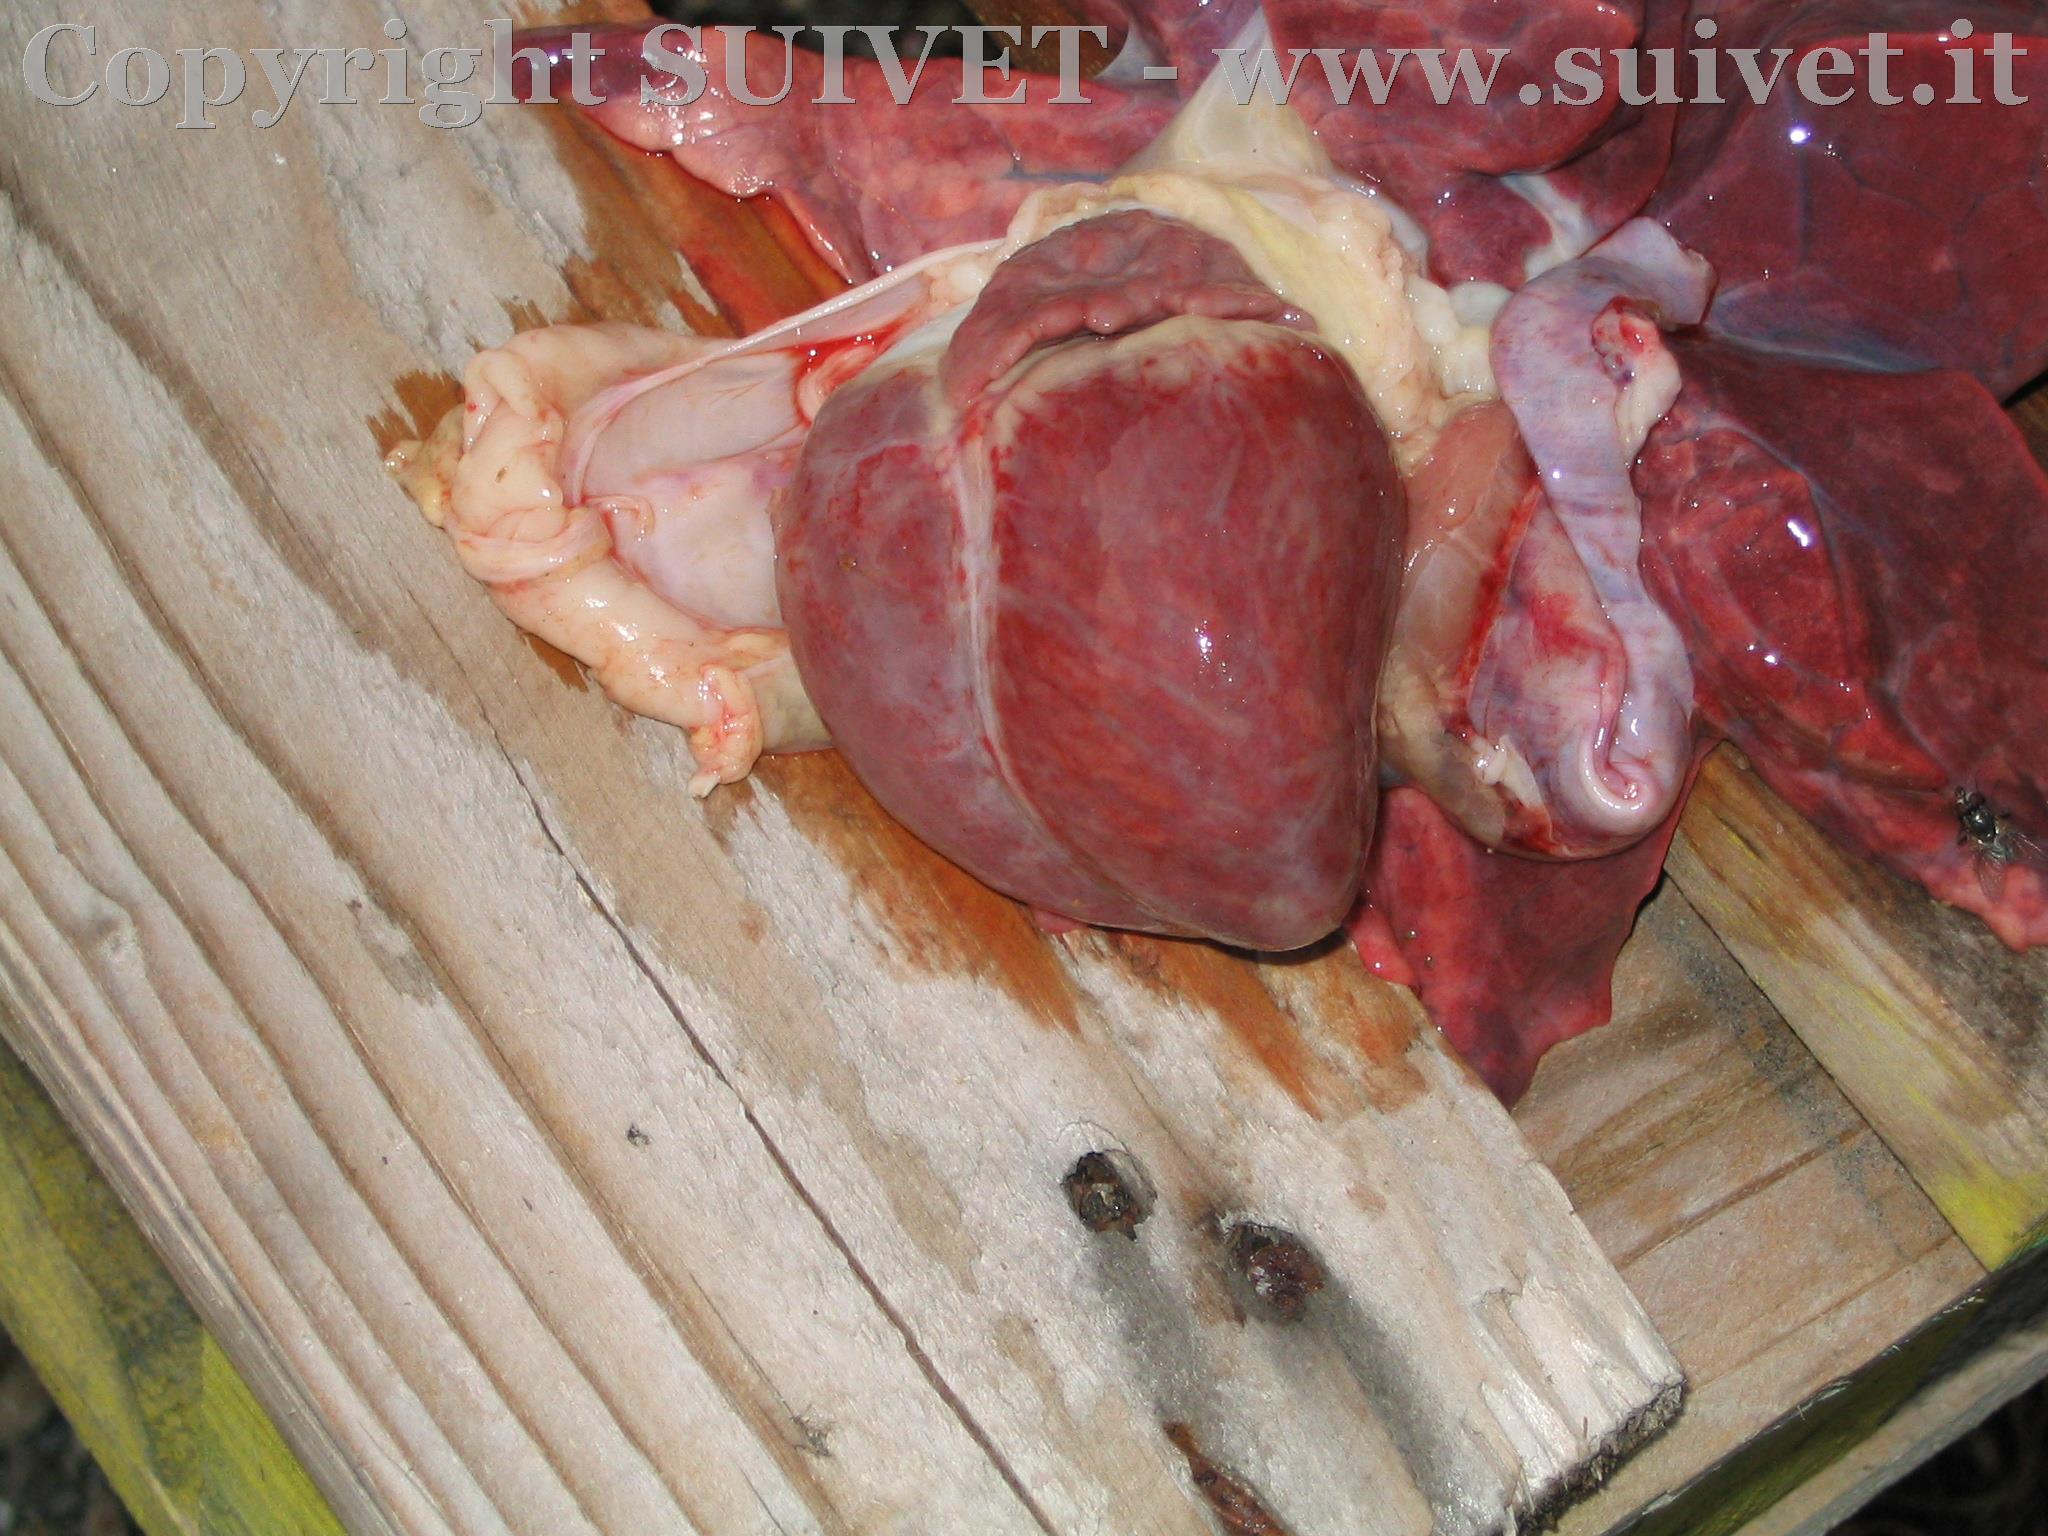 Foto 1: cavità cardiaca in suino affetto da MHD